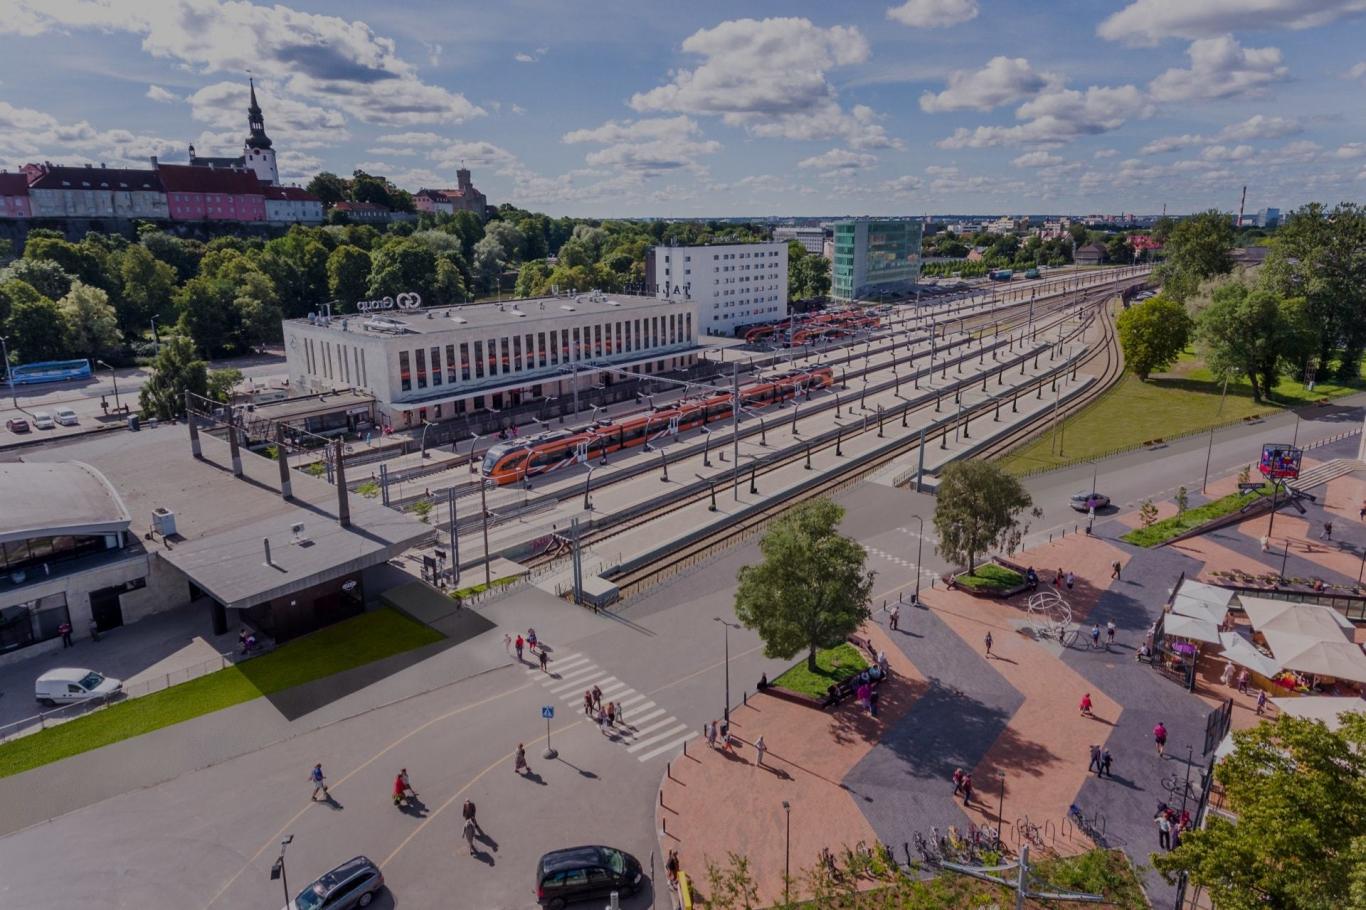 Eesti Raudtee kuulutas välja ehitushanke Laagrisse ooteplatvormi ning jalgratta- ja jalakäijate tunneli rajamiseks. Tunneli ja platvormi rajamine on üks osa suu